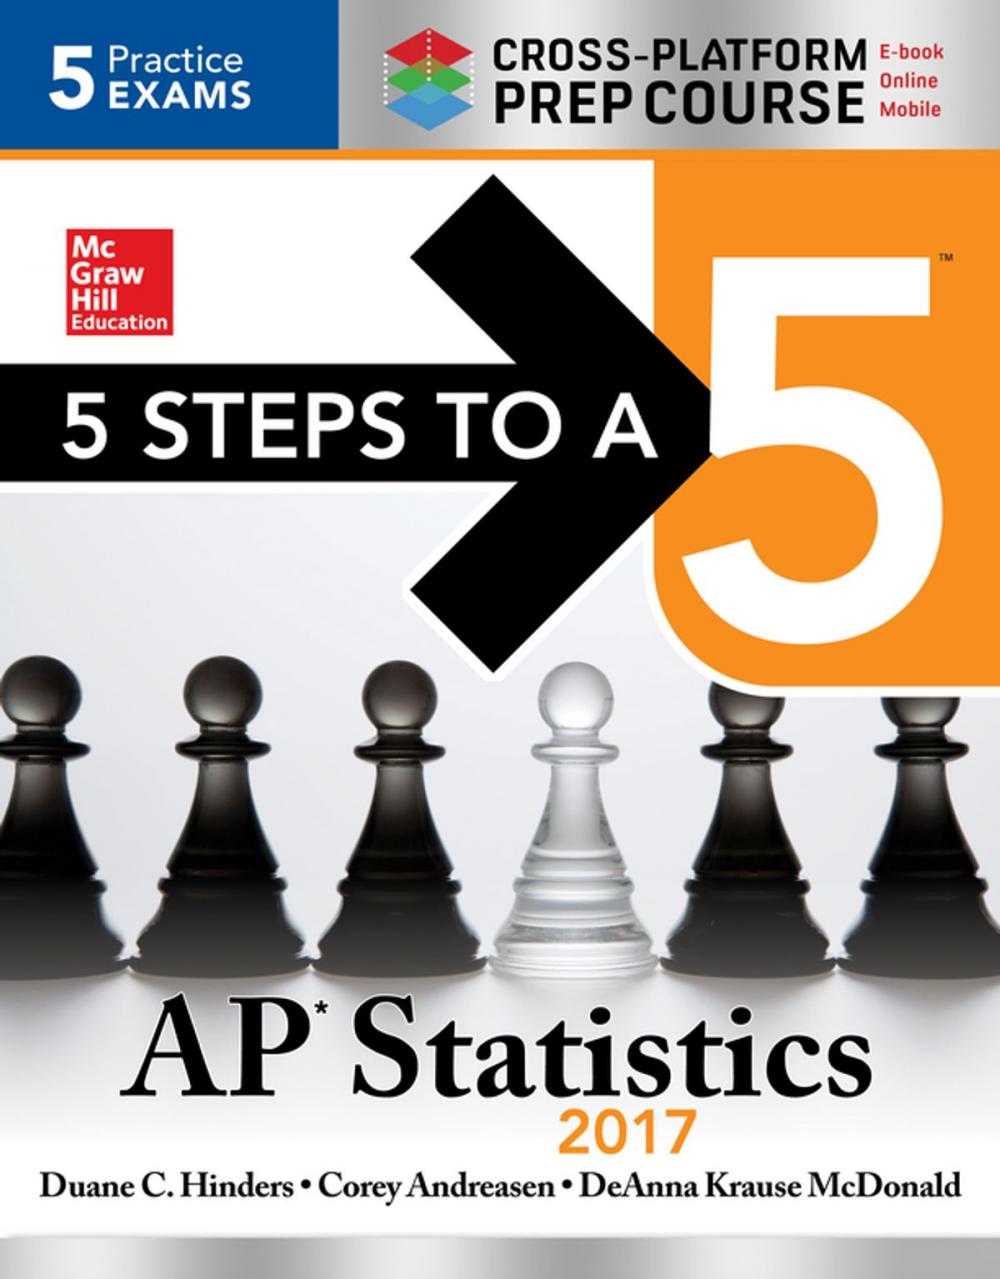 Big bigCover of 5 Steps to a 5 AP Statistics 2017 Cross-Platform Prep Course